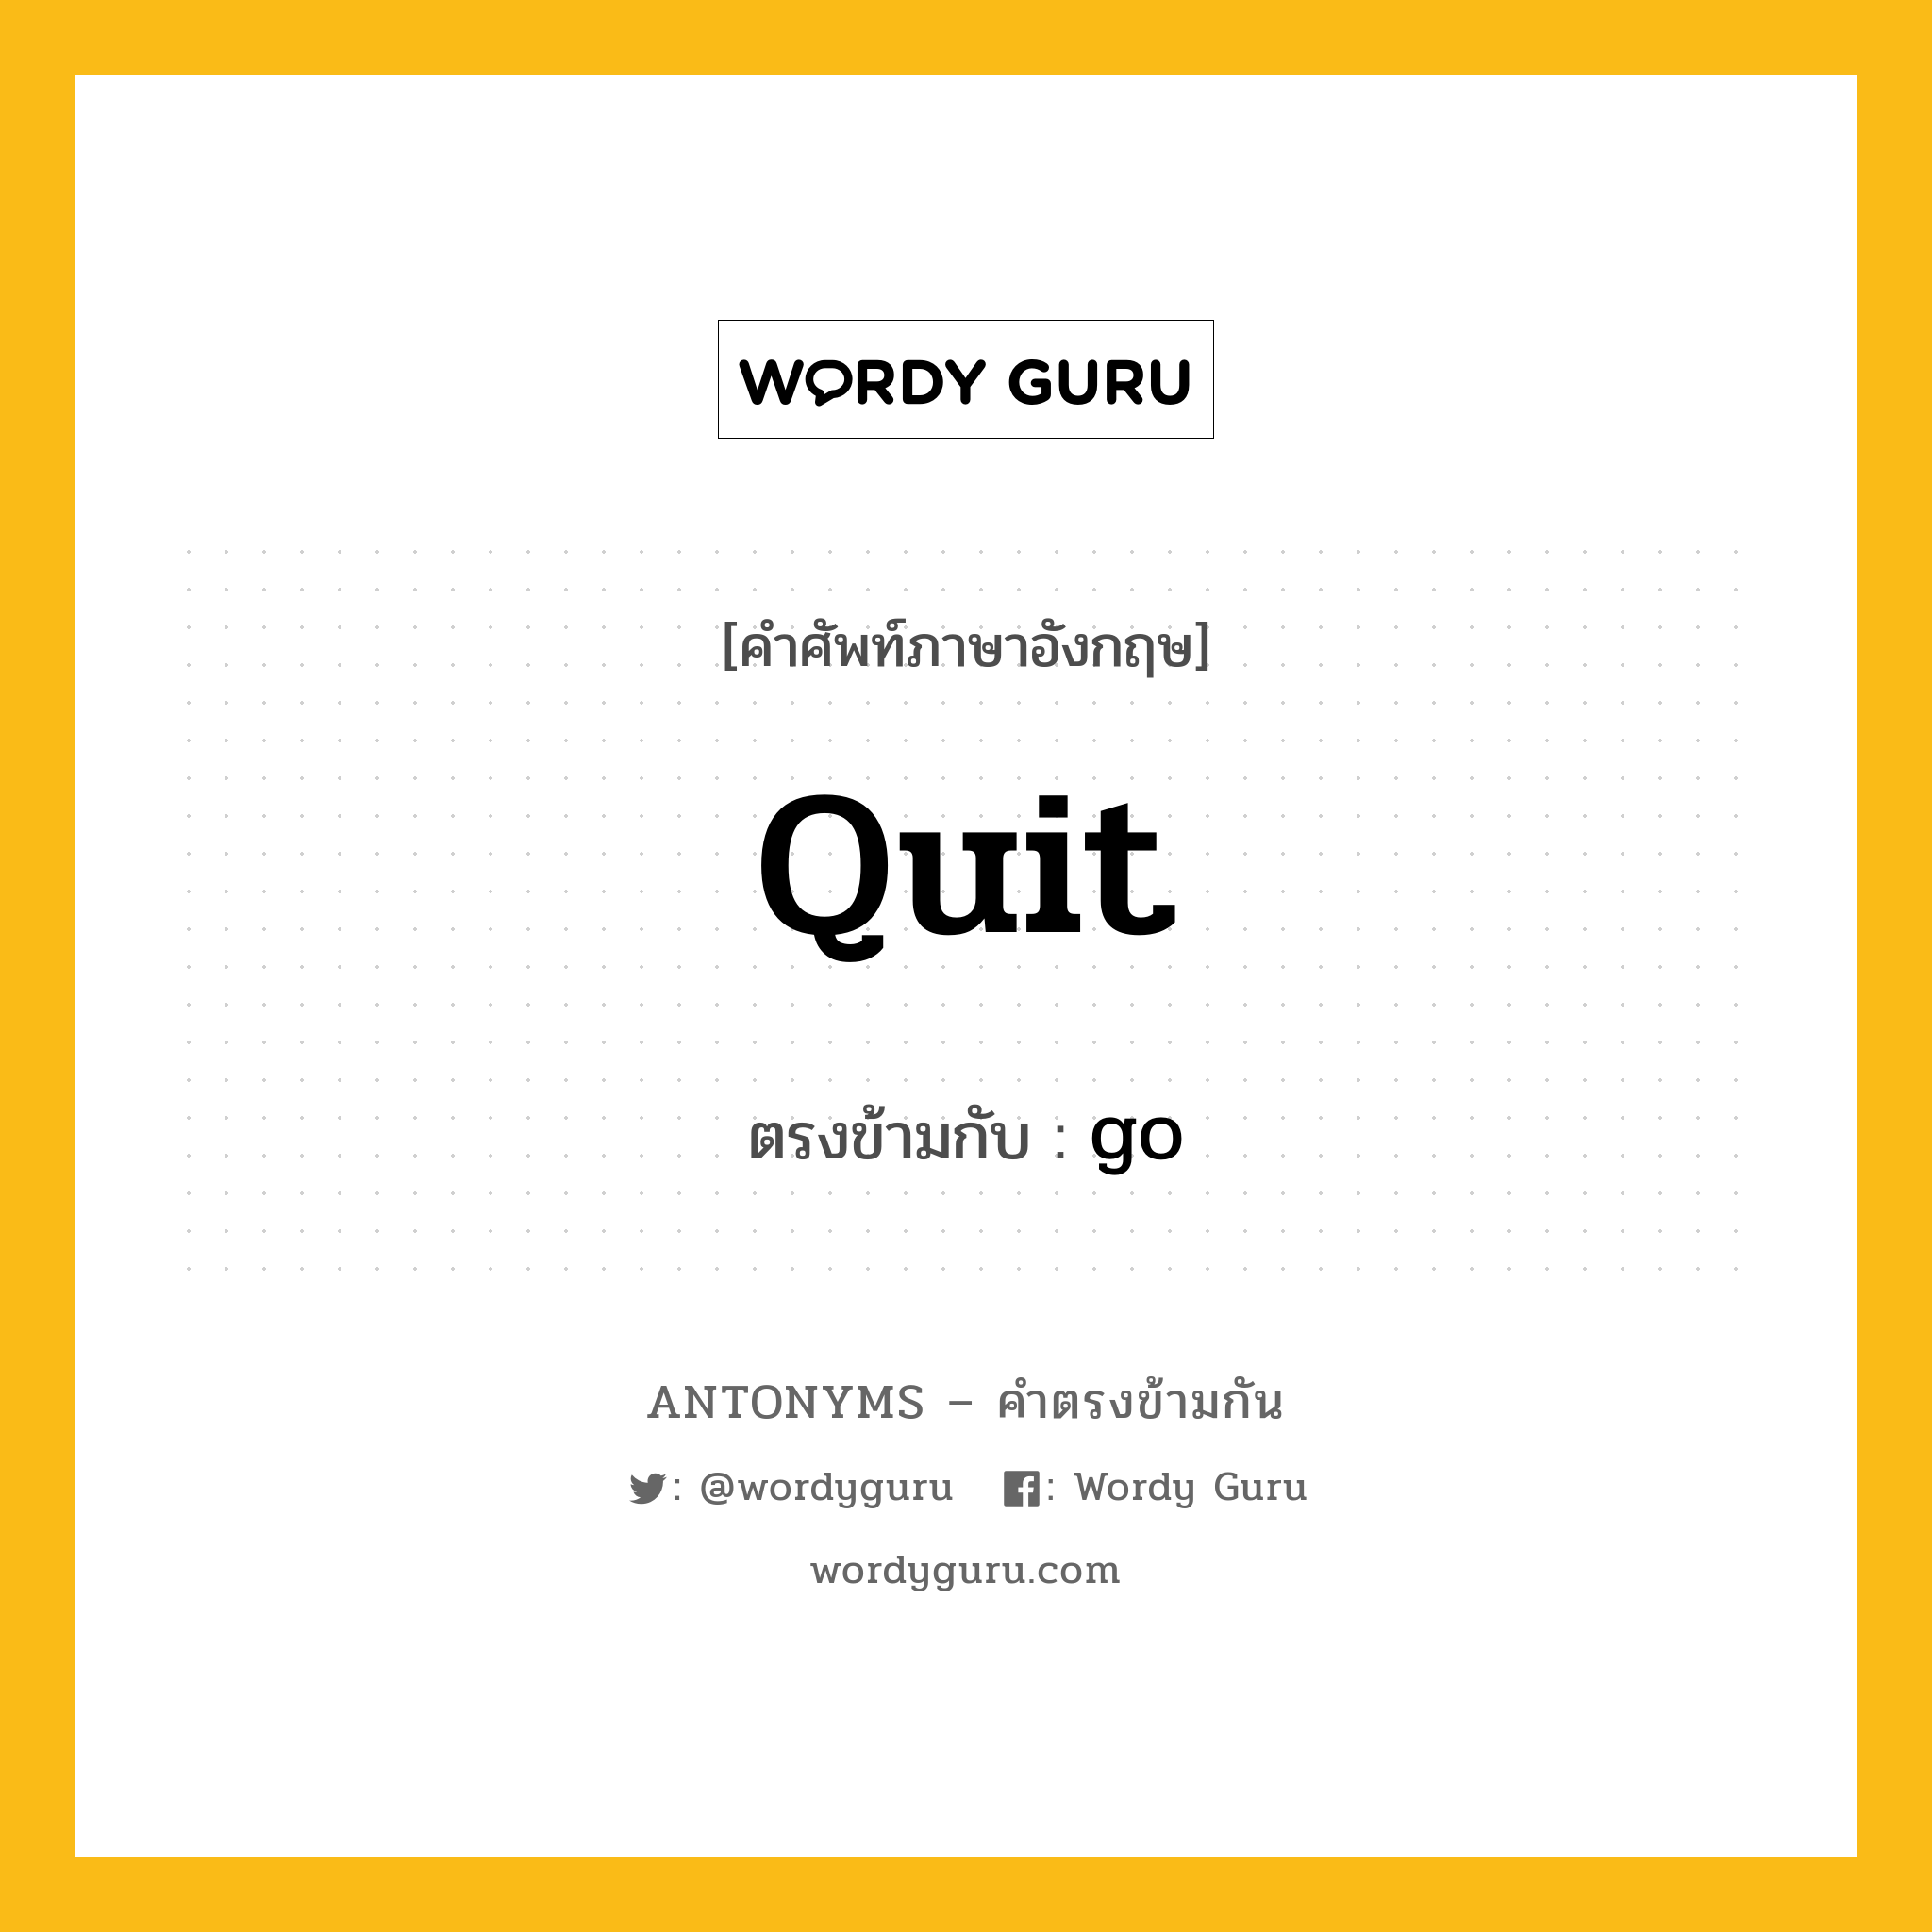 quit เป็นคำตรงข้ามกับคำไหนบ้าง?, คำศัพท์ภาษาอังกฤษ quit ตรงข้ามกับ go หมวด go